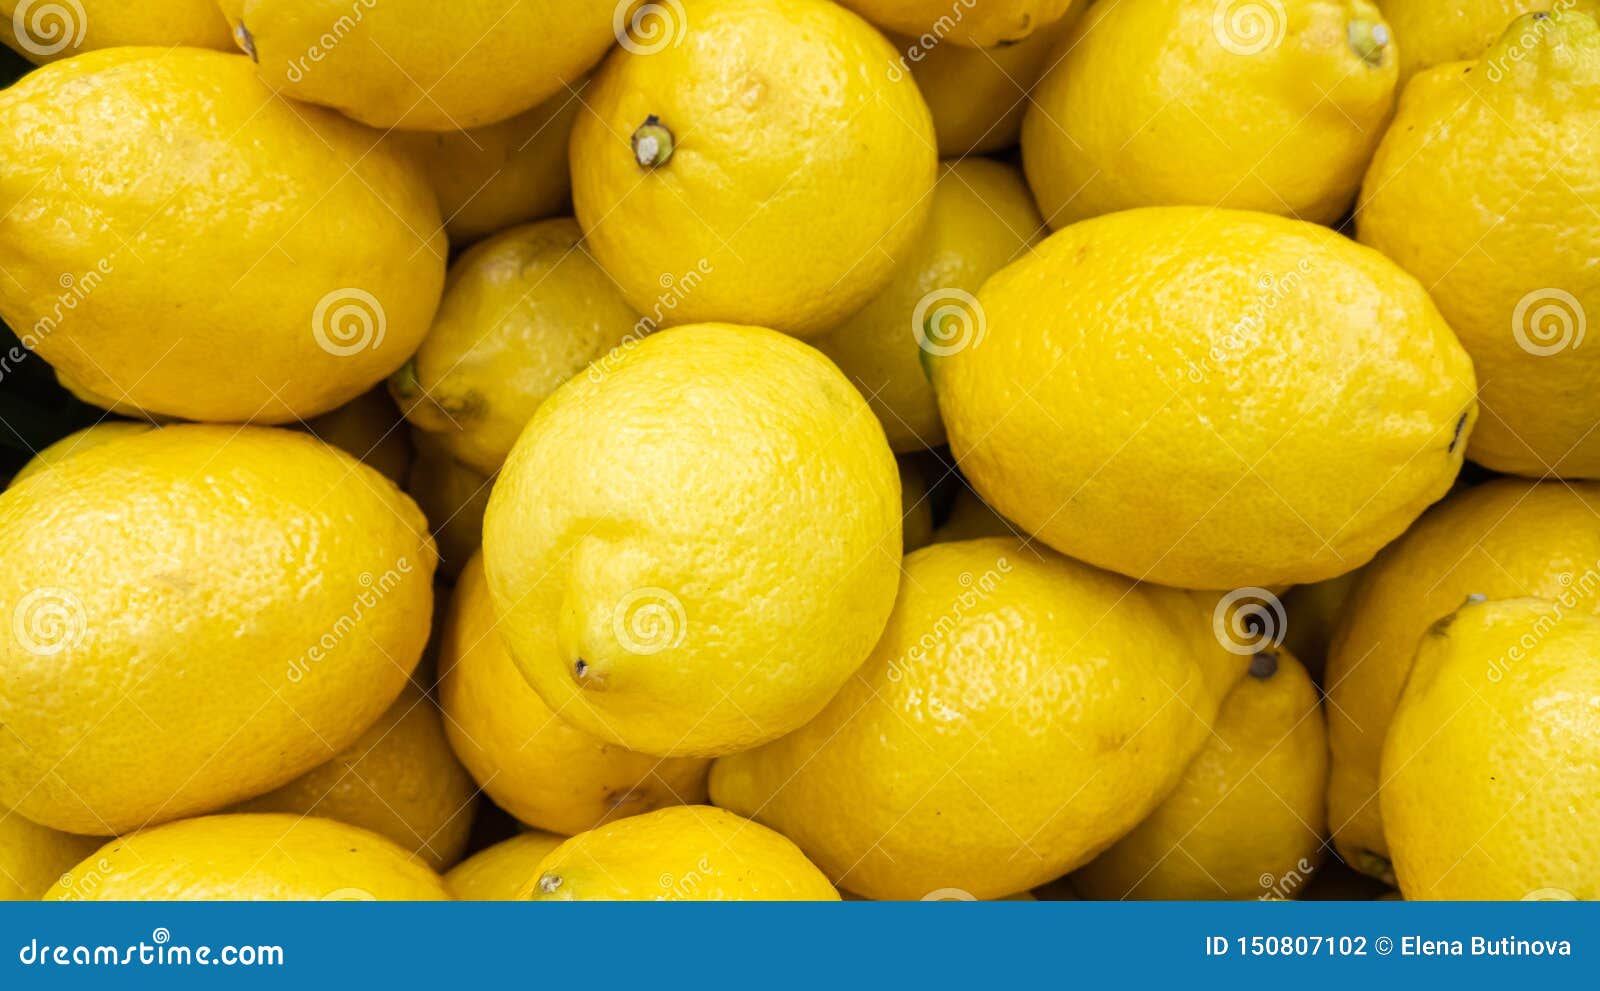 background of whole lemon fruits